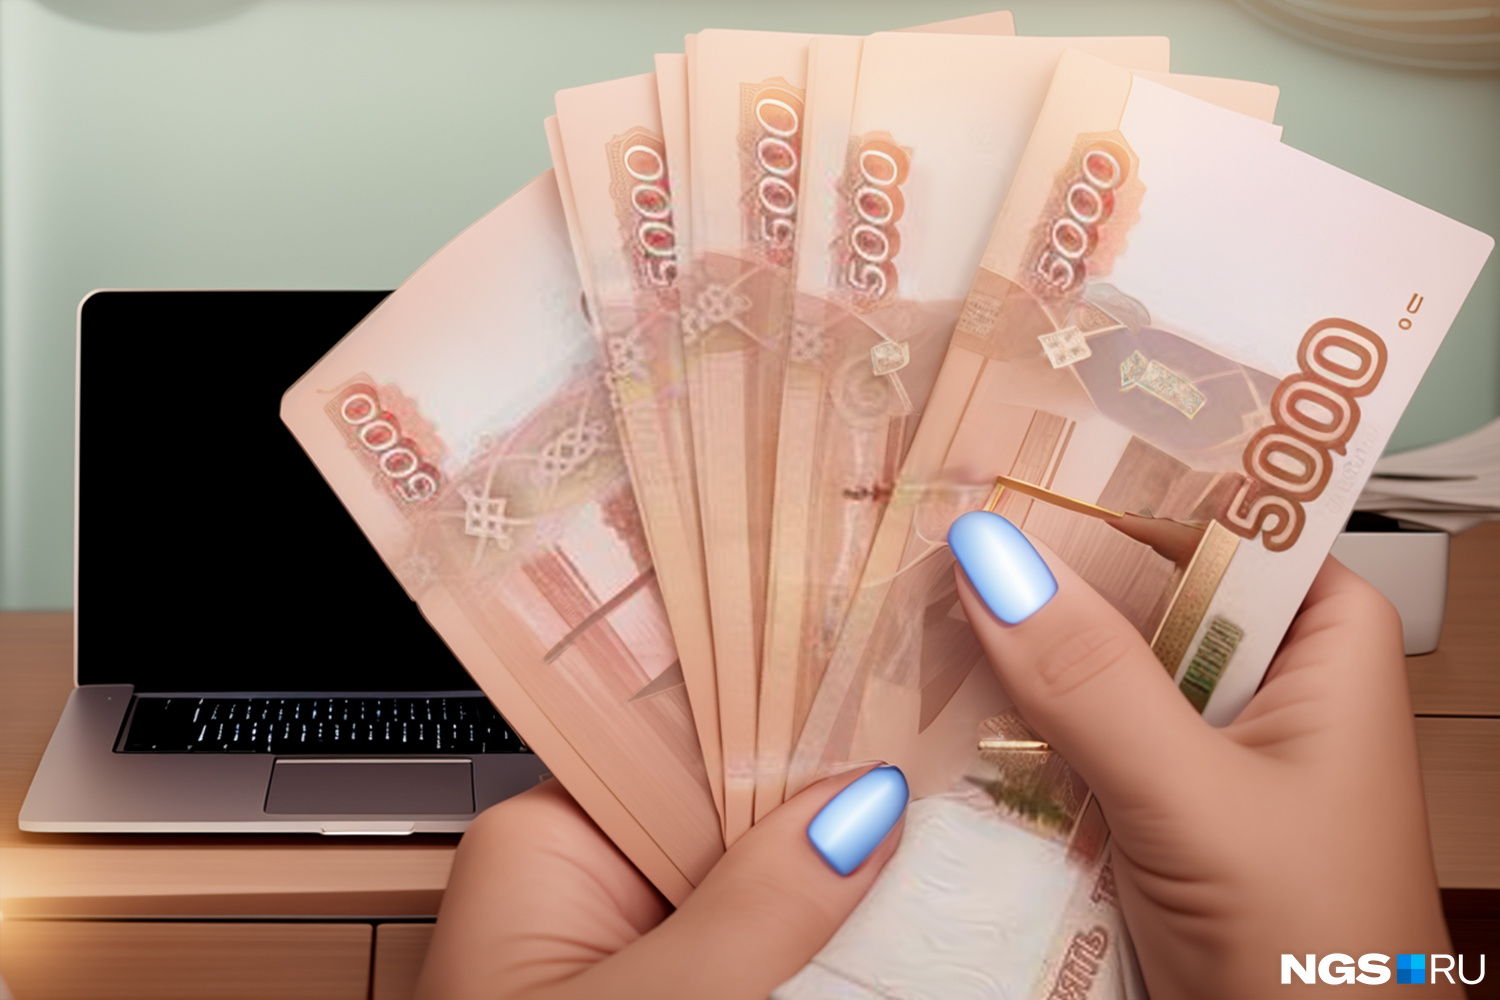 В роли вебкам-модели жительница Новосибирска зарабатывала от 200 до 300 тысяч рублей в месяц